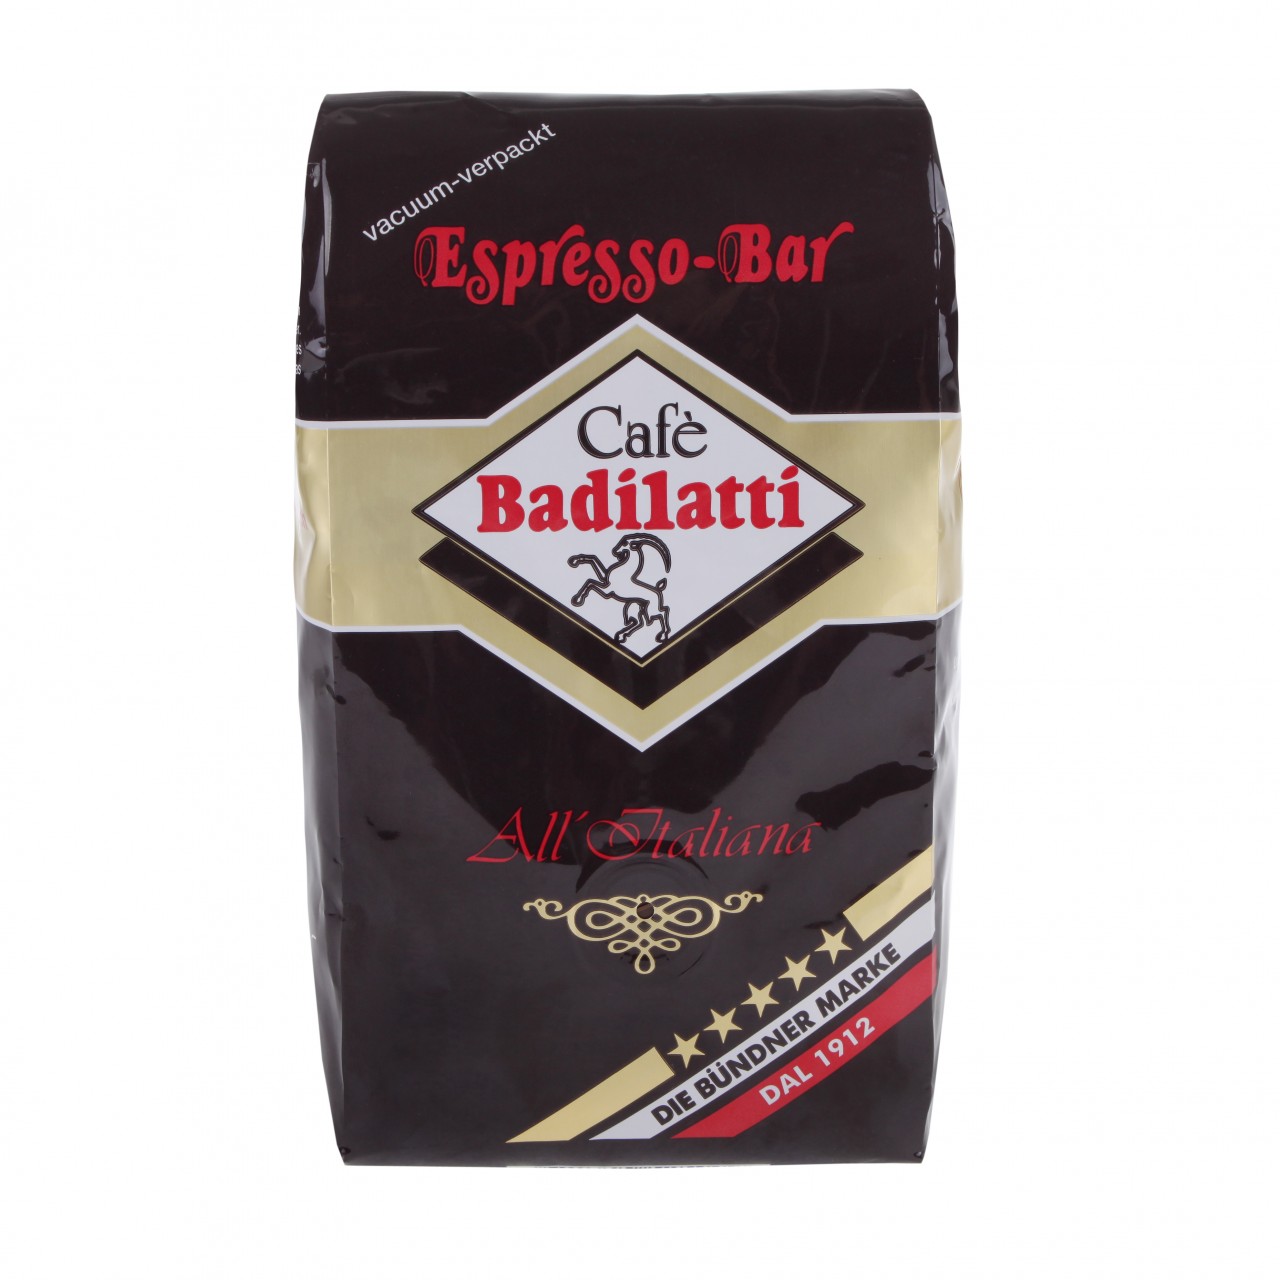 Badilatti Espresso Bar